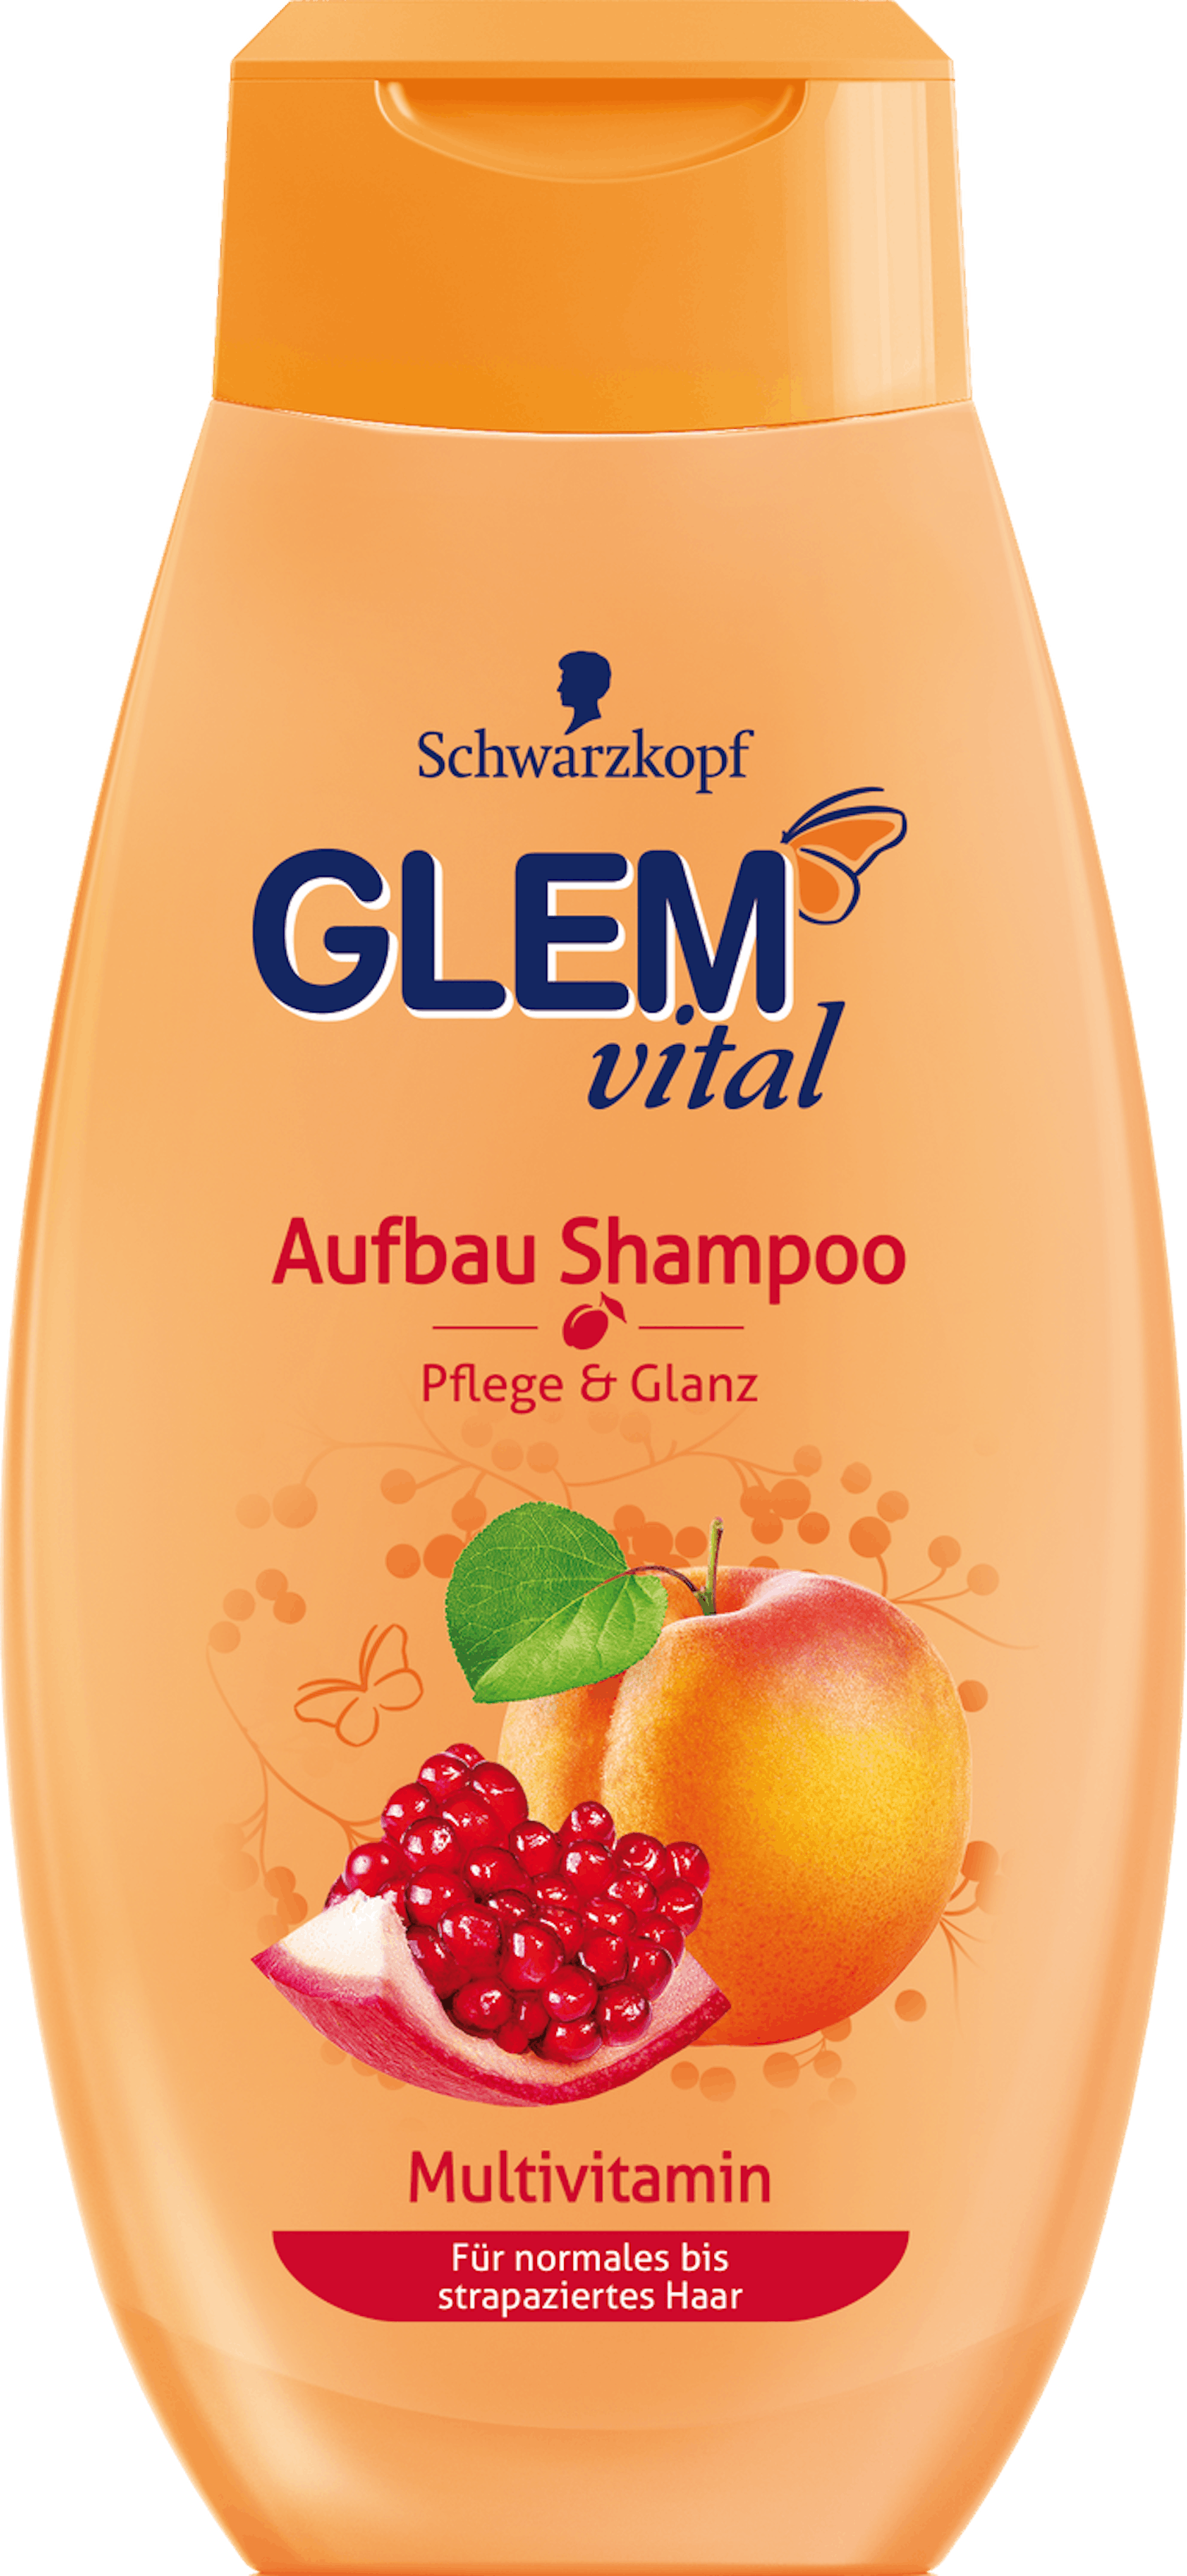 Glem vital Aufbau Shampoo